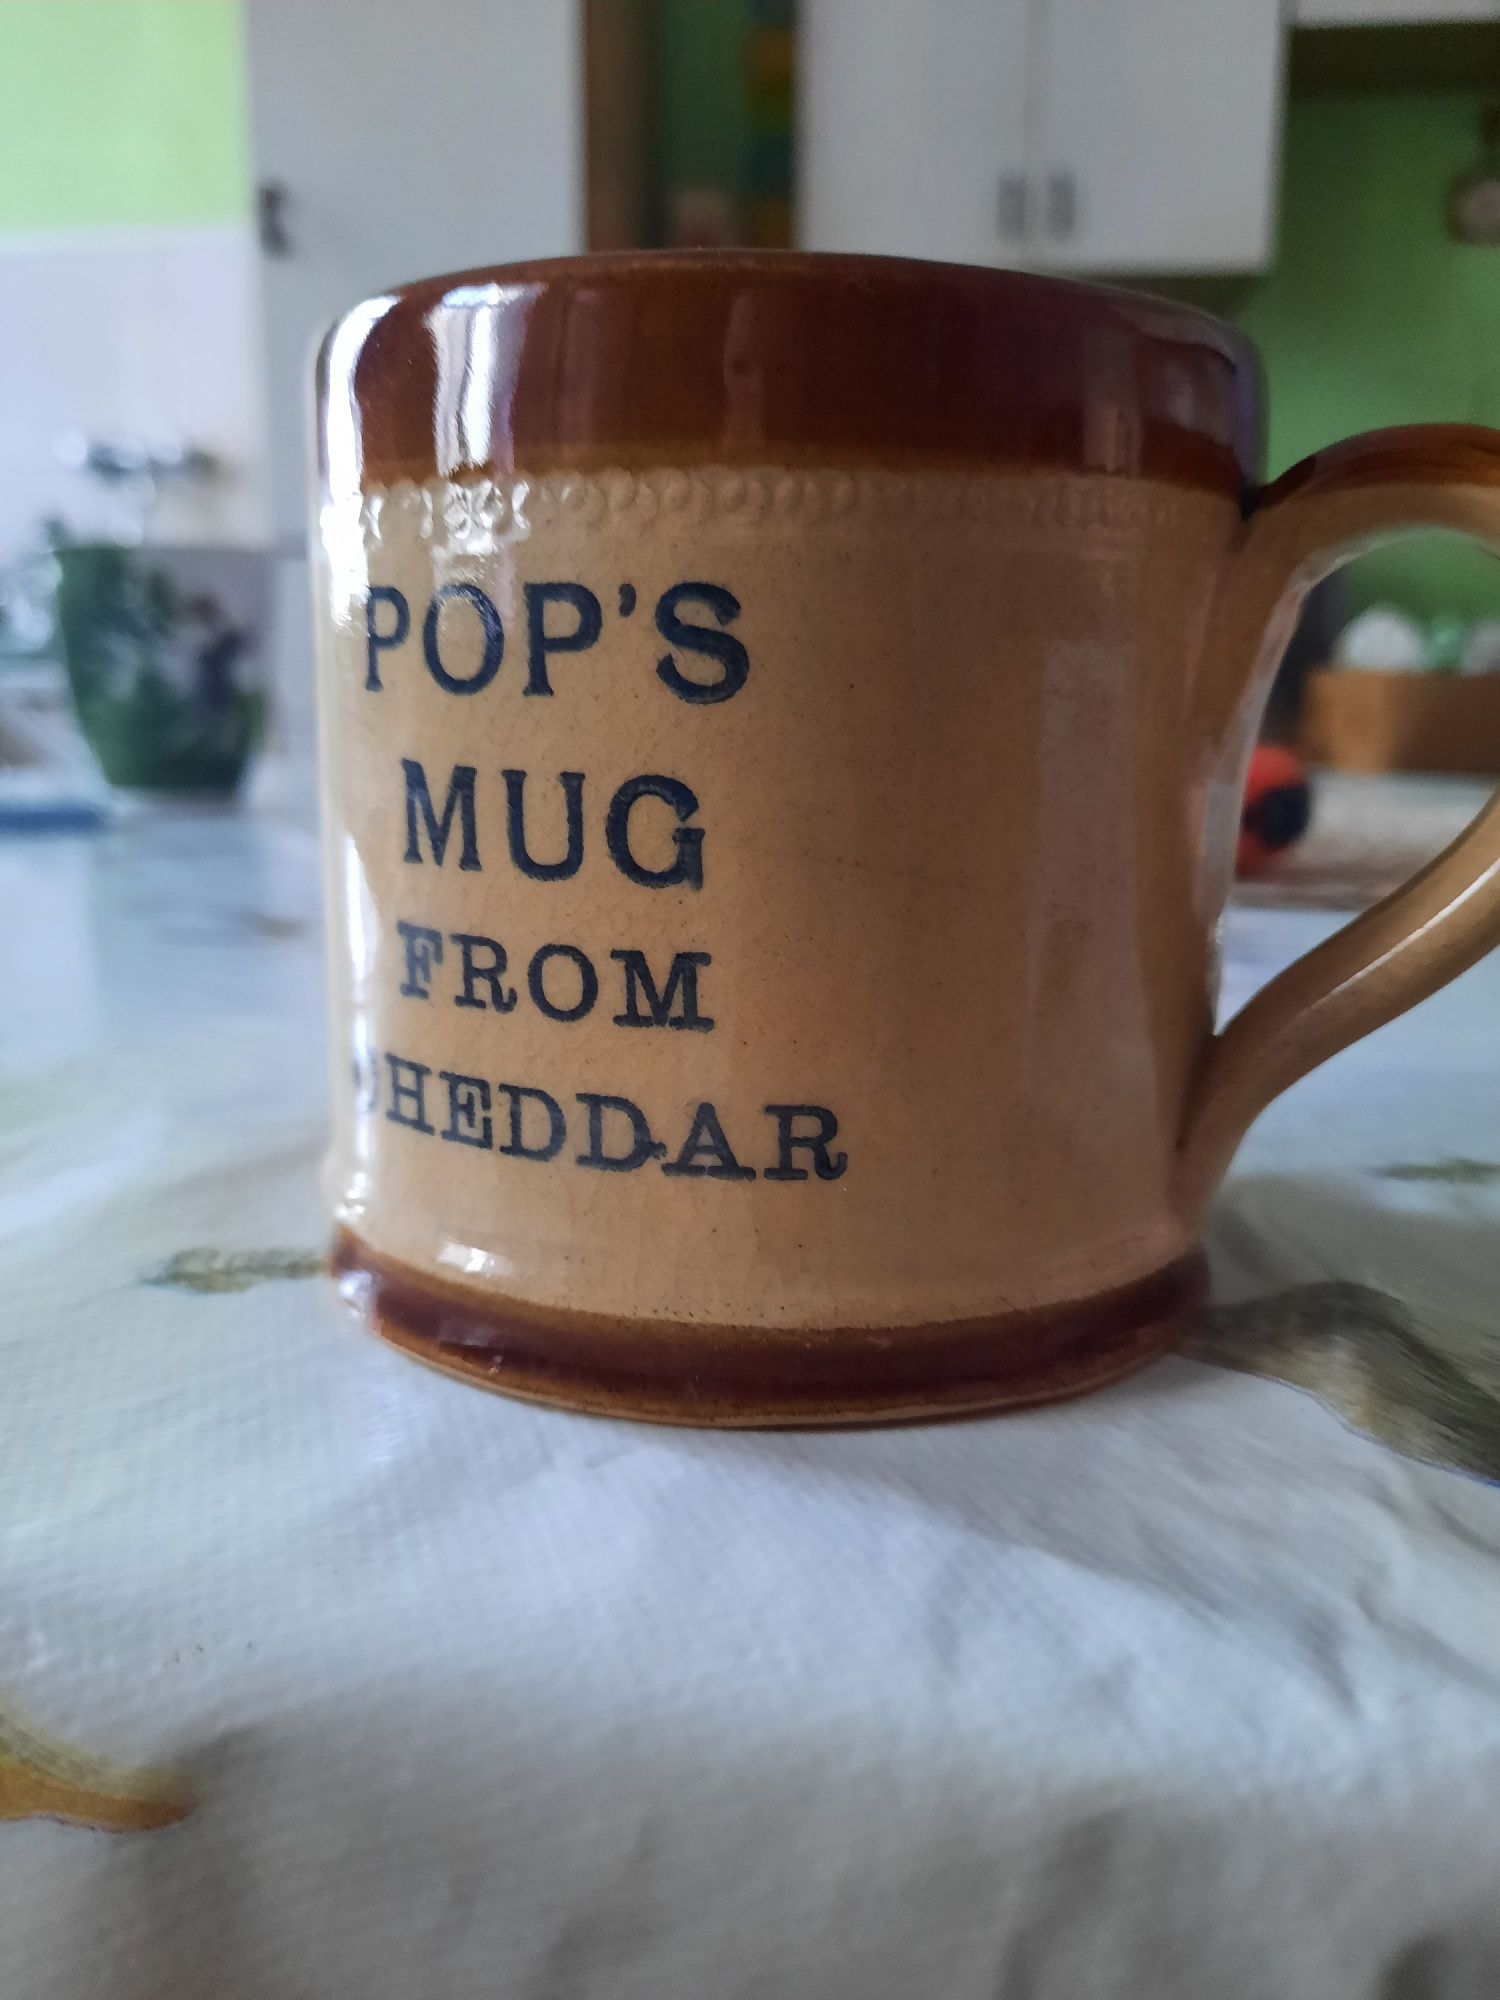 Pop's mug from cheddar kube kamionka porcelit brąz beż